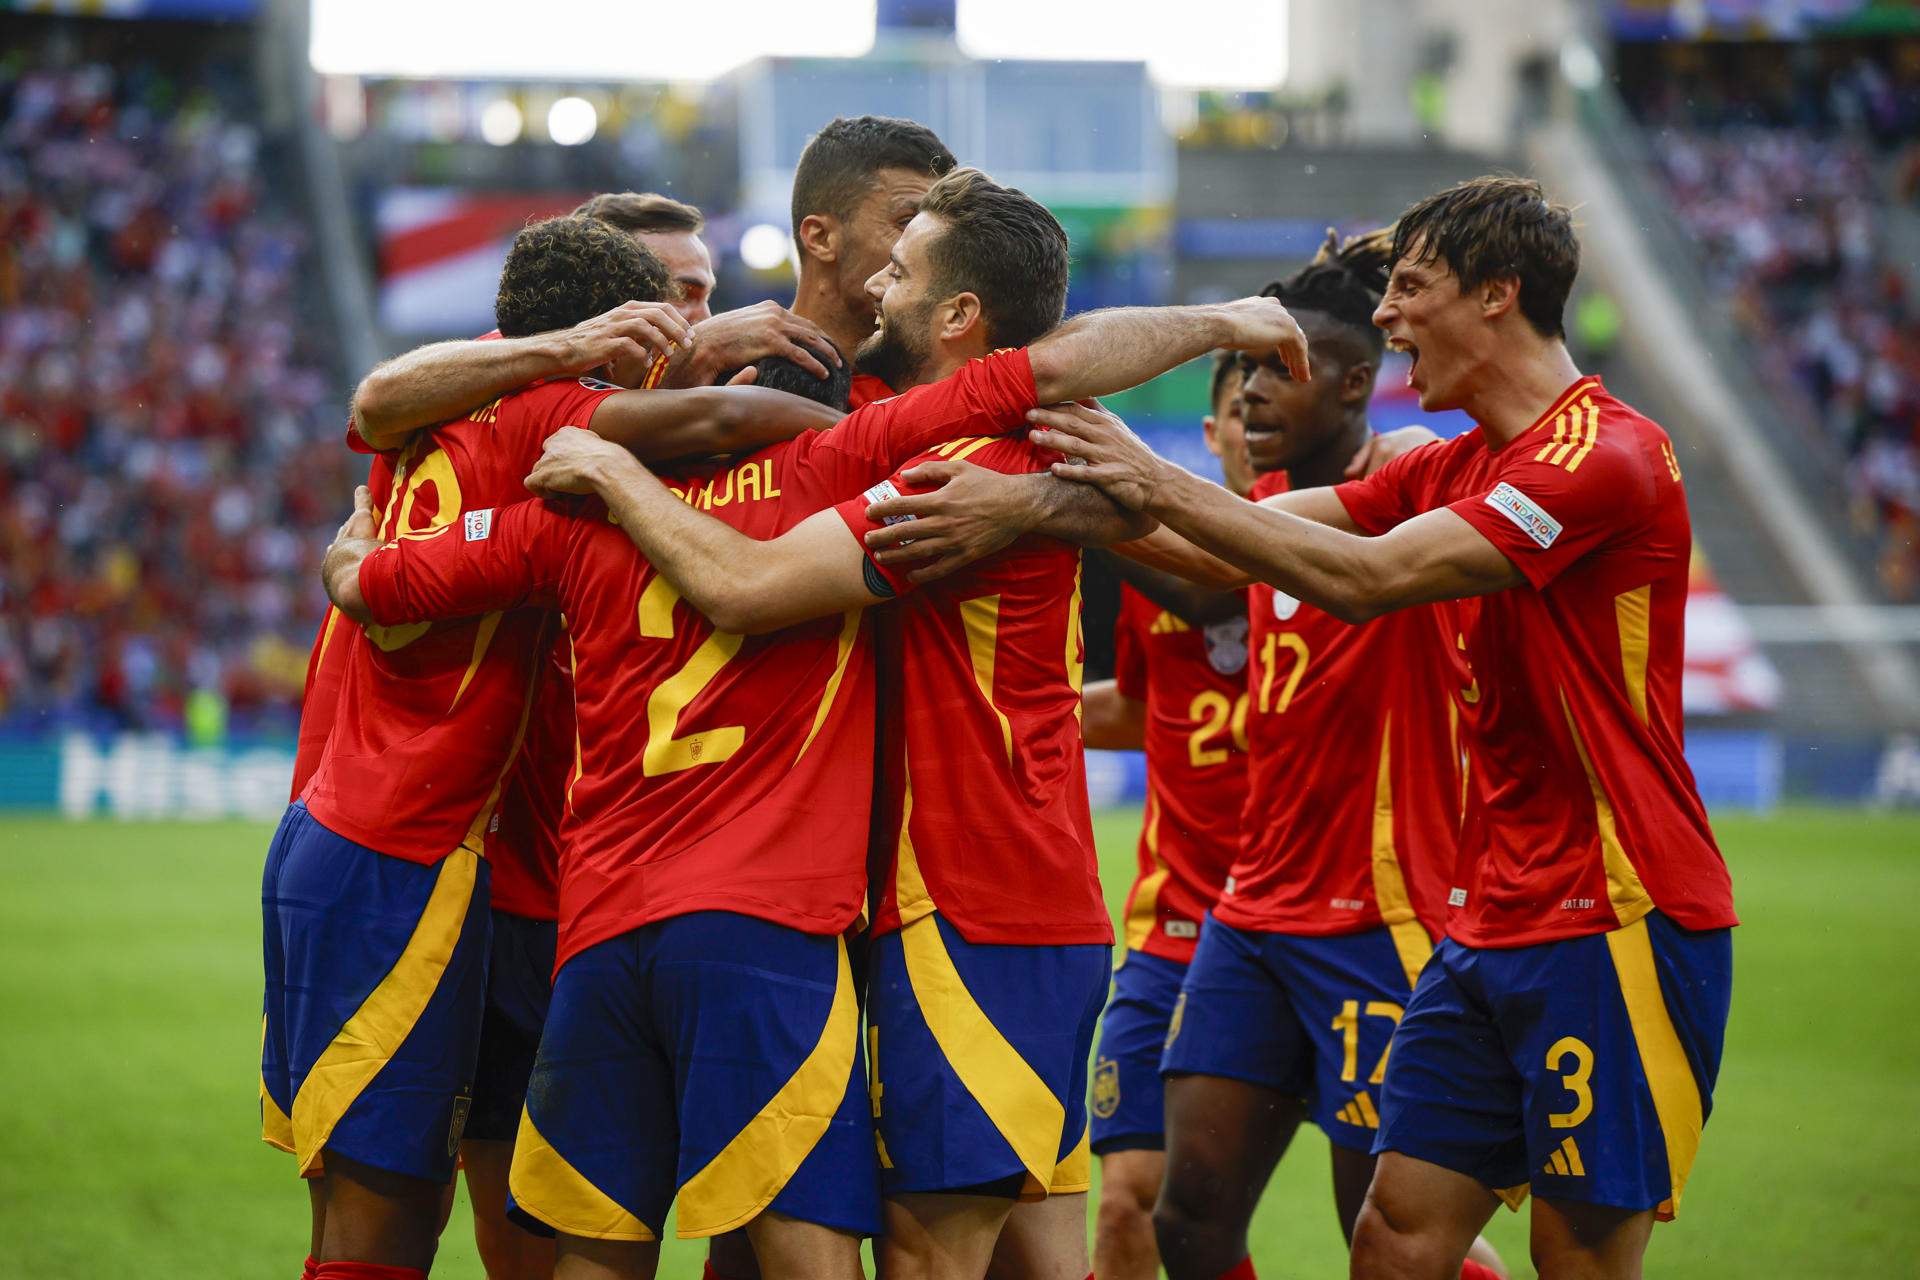 España brilla en su debut en la Eurocopa con una goleada ante Croacia (3-0)